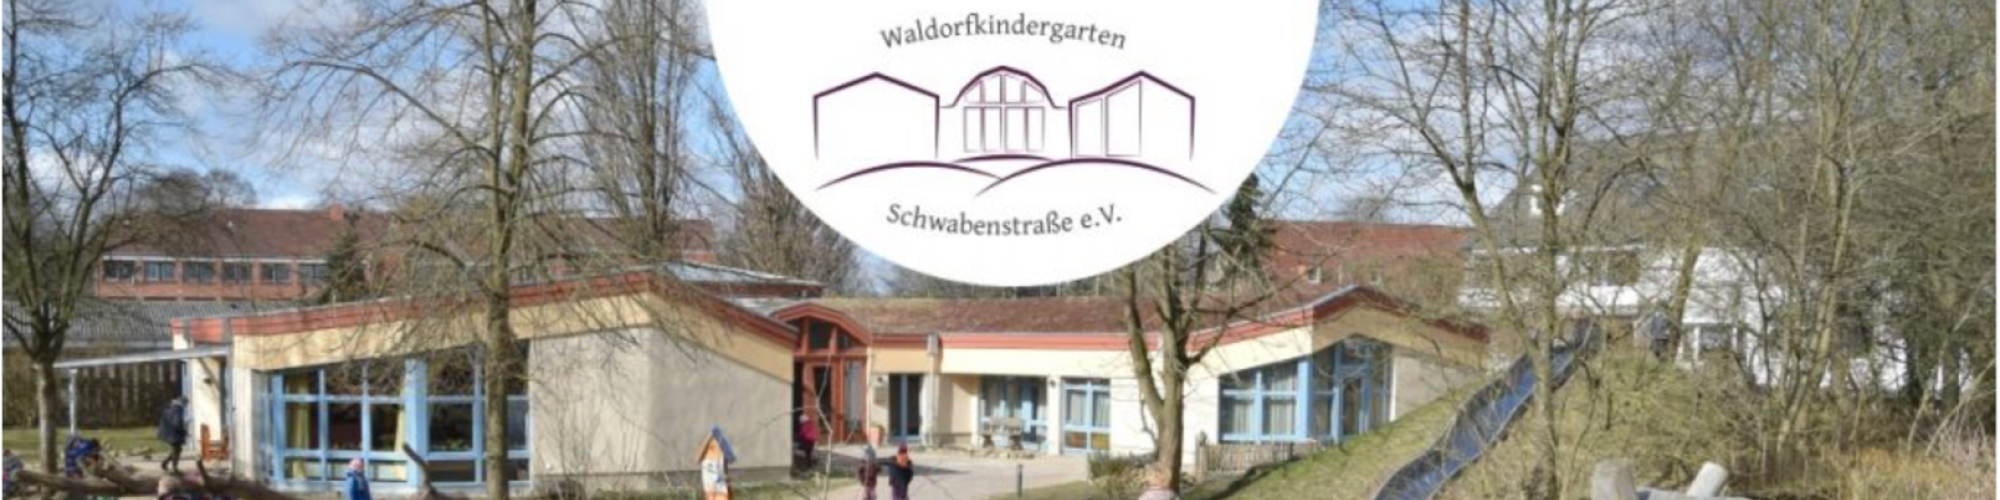 Waldorfkindergarten Neumünster Schwabenstr. e.V.